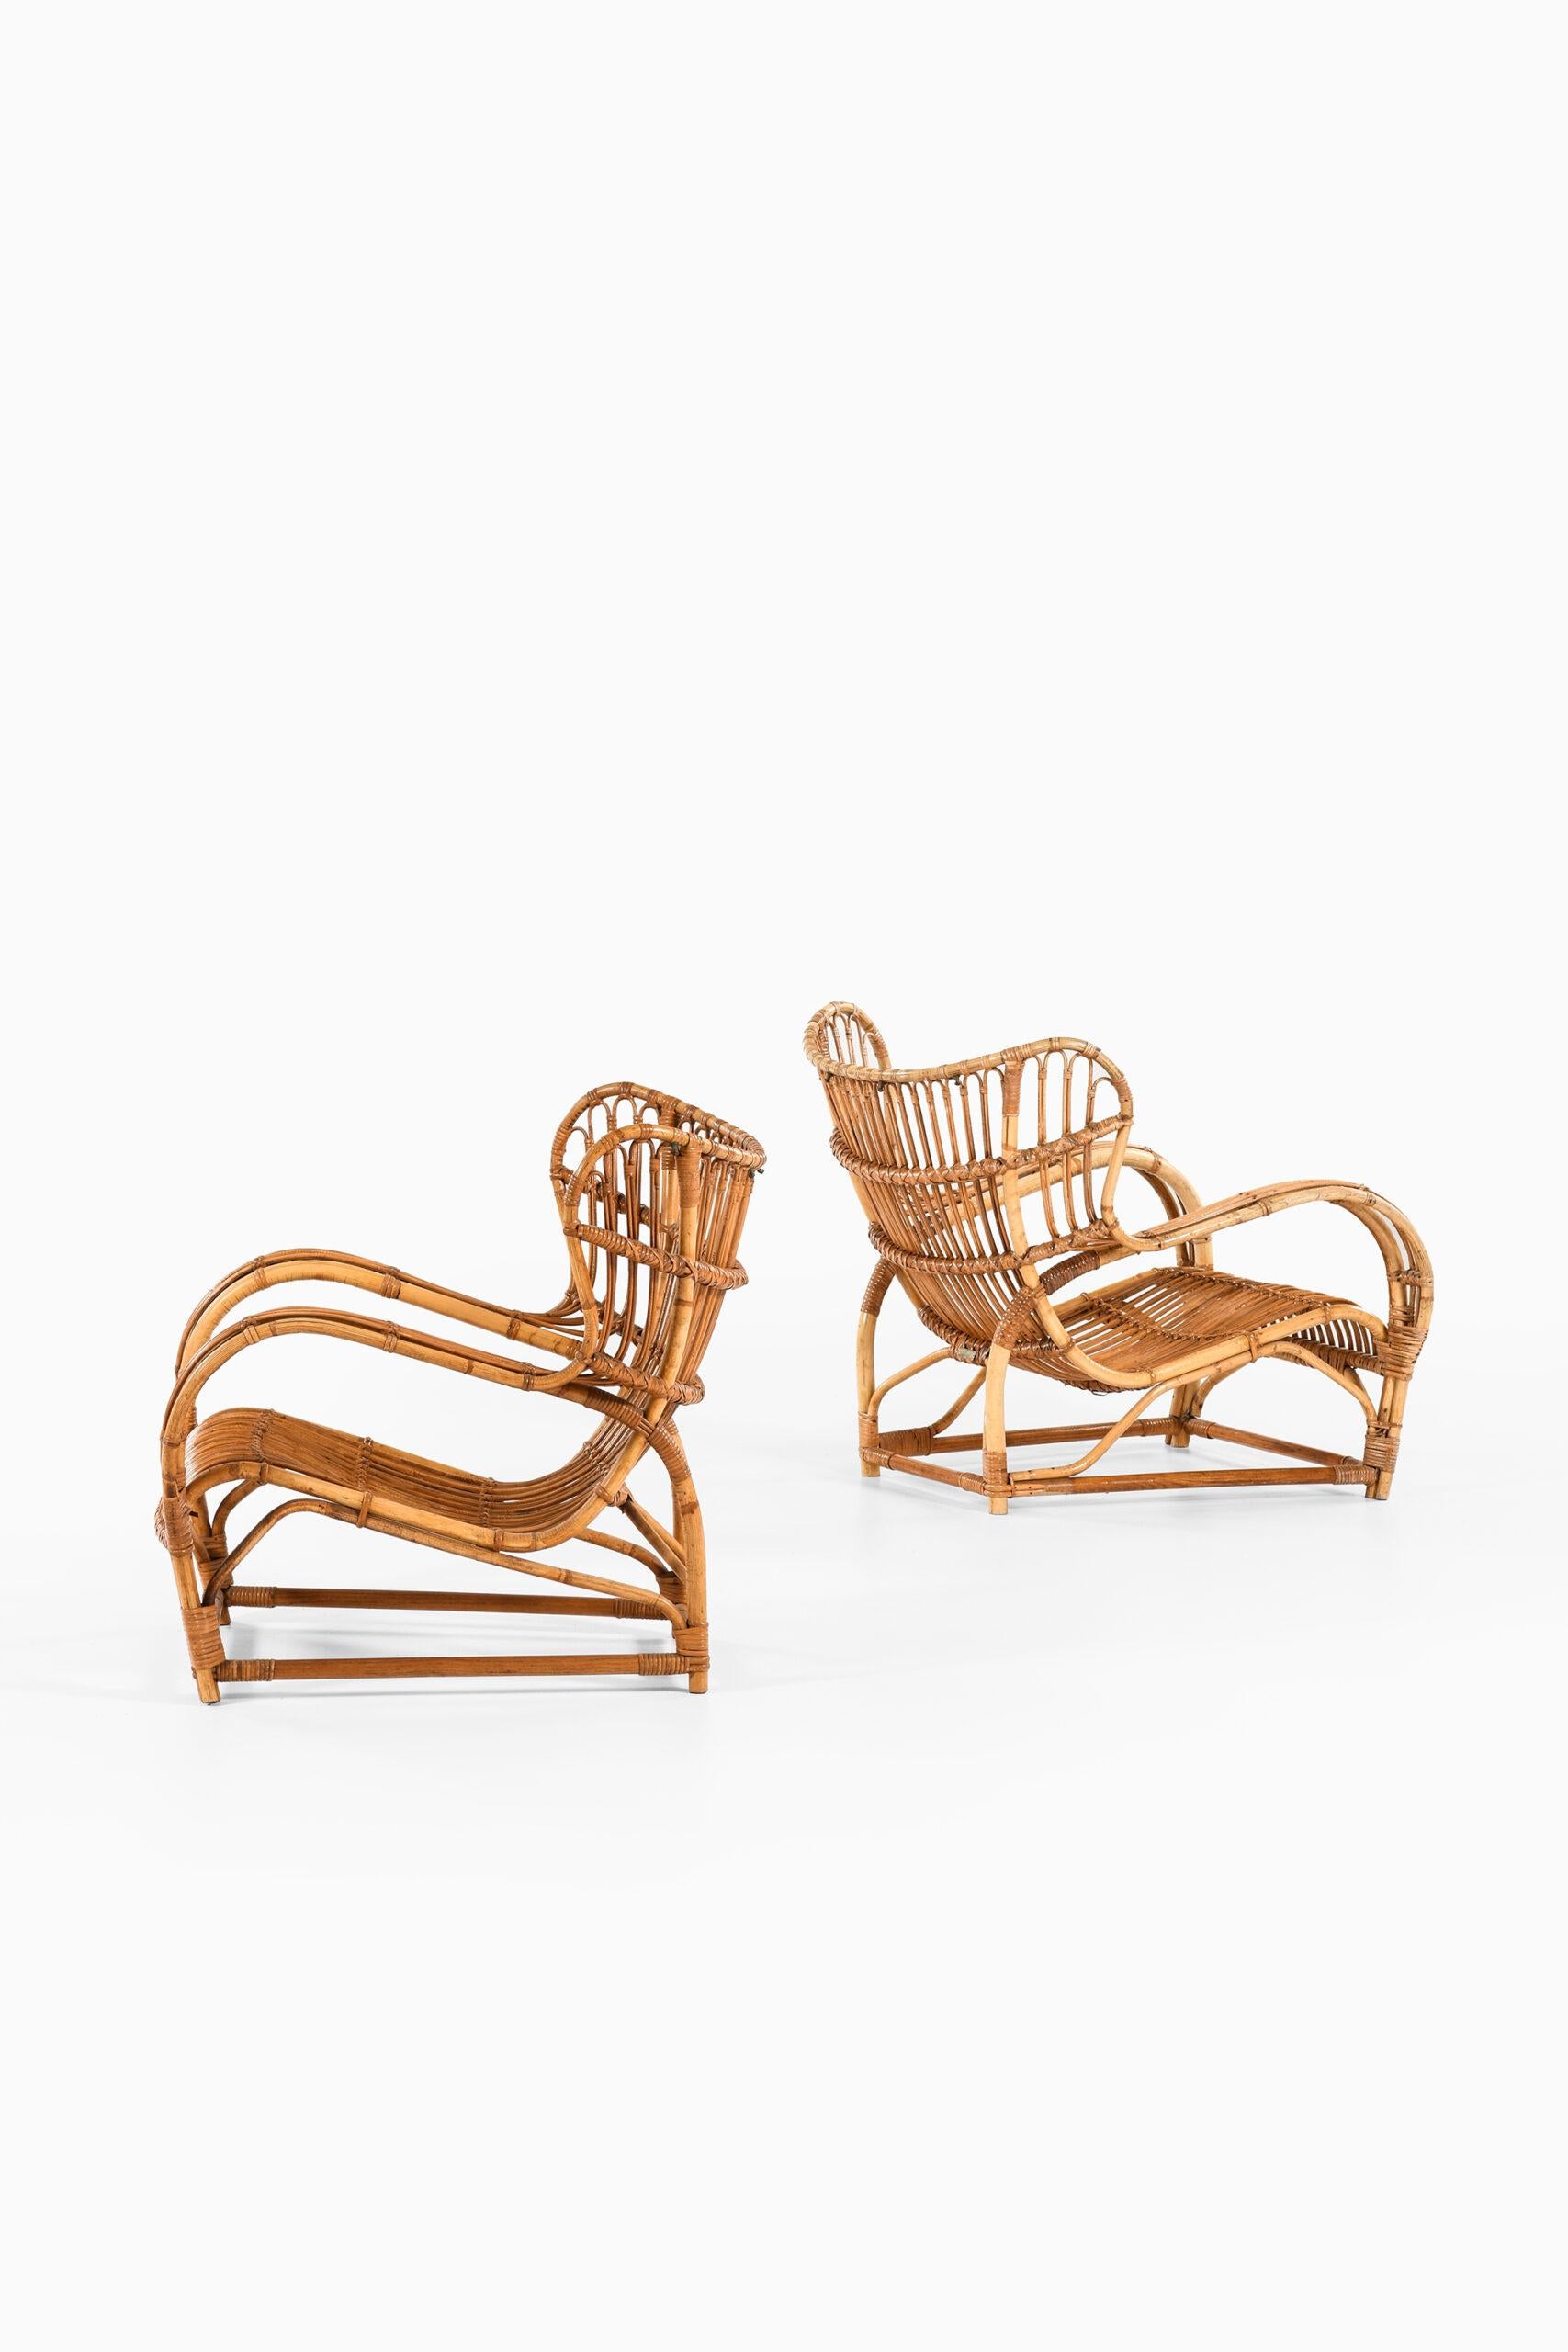 Viggo Boesen Easy Chairs Modell 3440, hergestellt von R. Wengler in Dänemark (Skandinavische Moderne) im Angebot